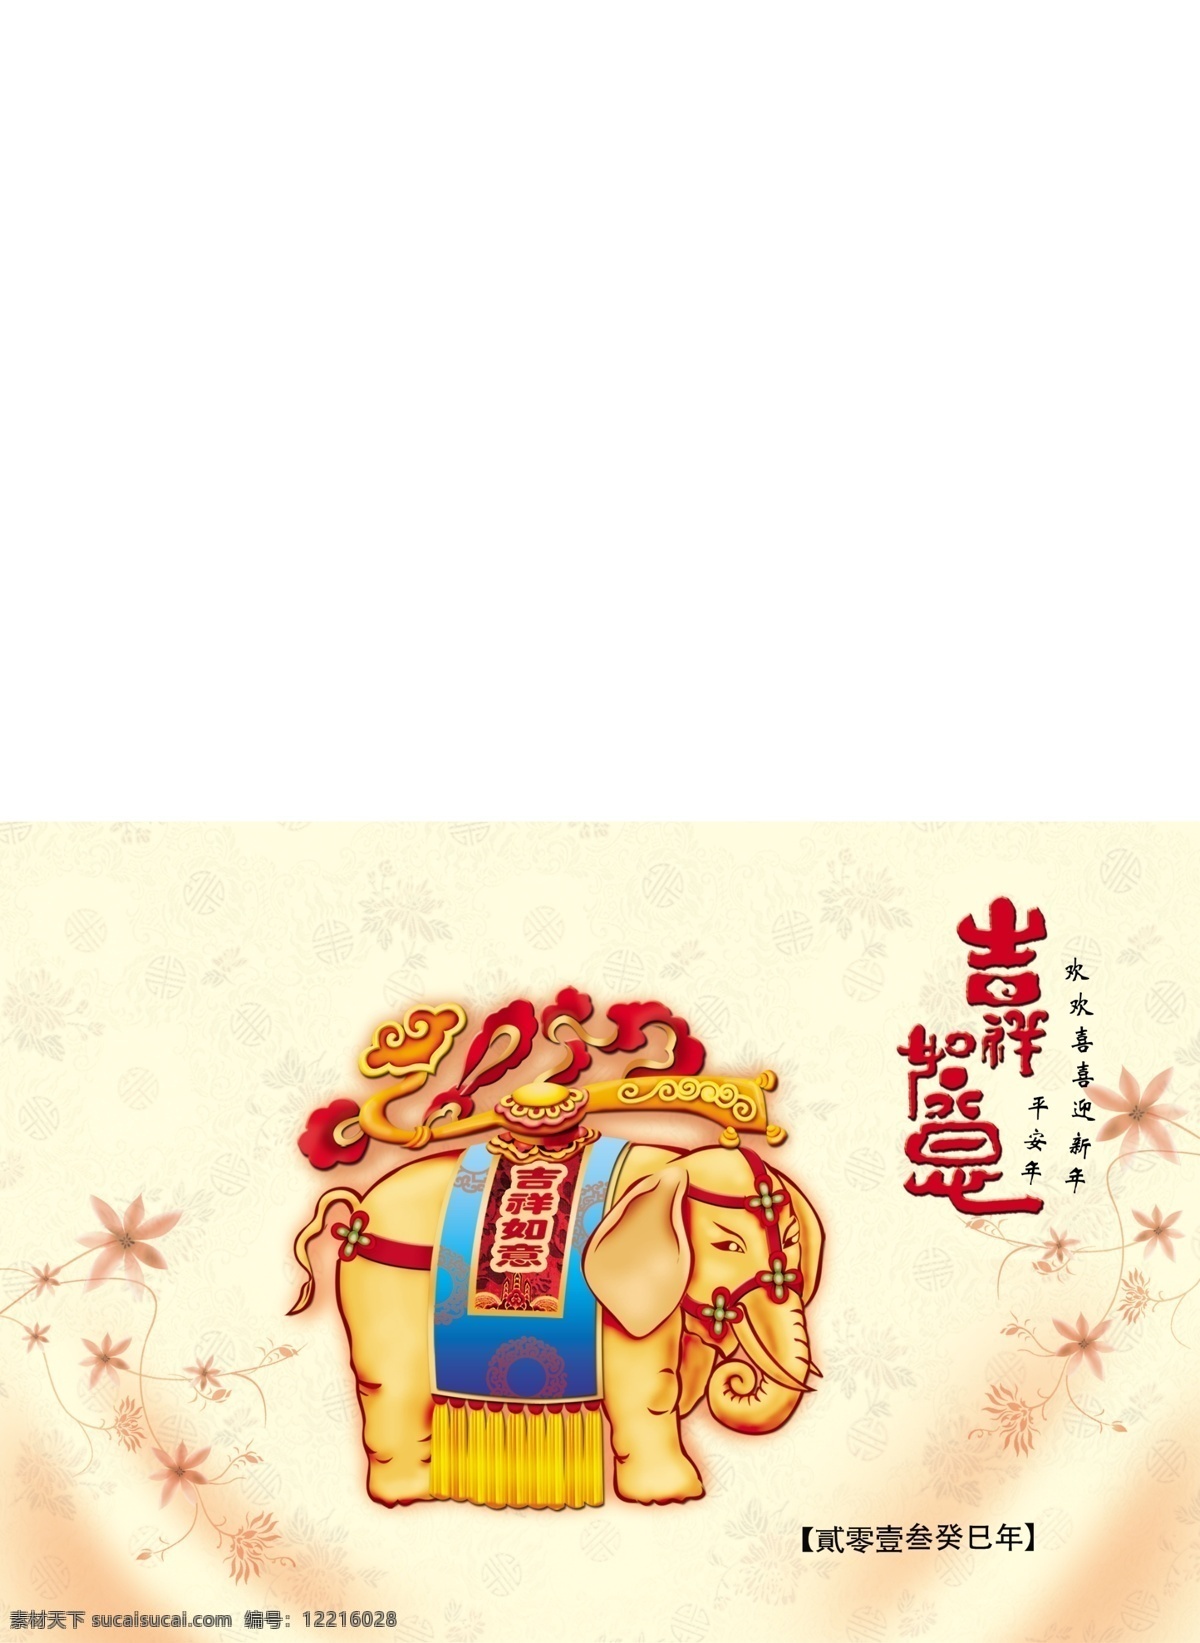 新年贺卡 传统 春节 大象 贺卡 吉祥 吉祥如意 节日素材 如意 新年 源文件 2015羊年